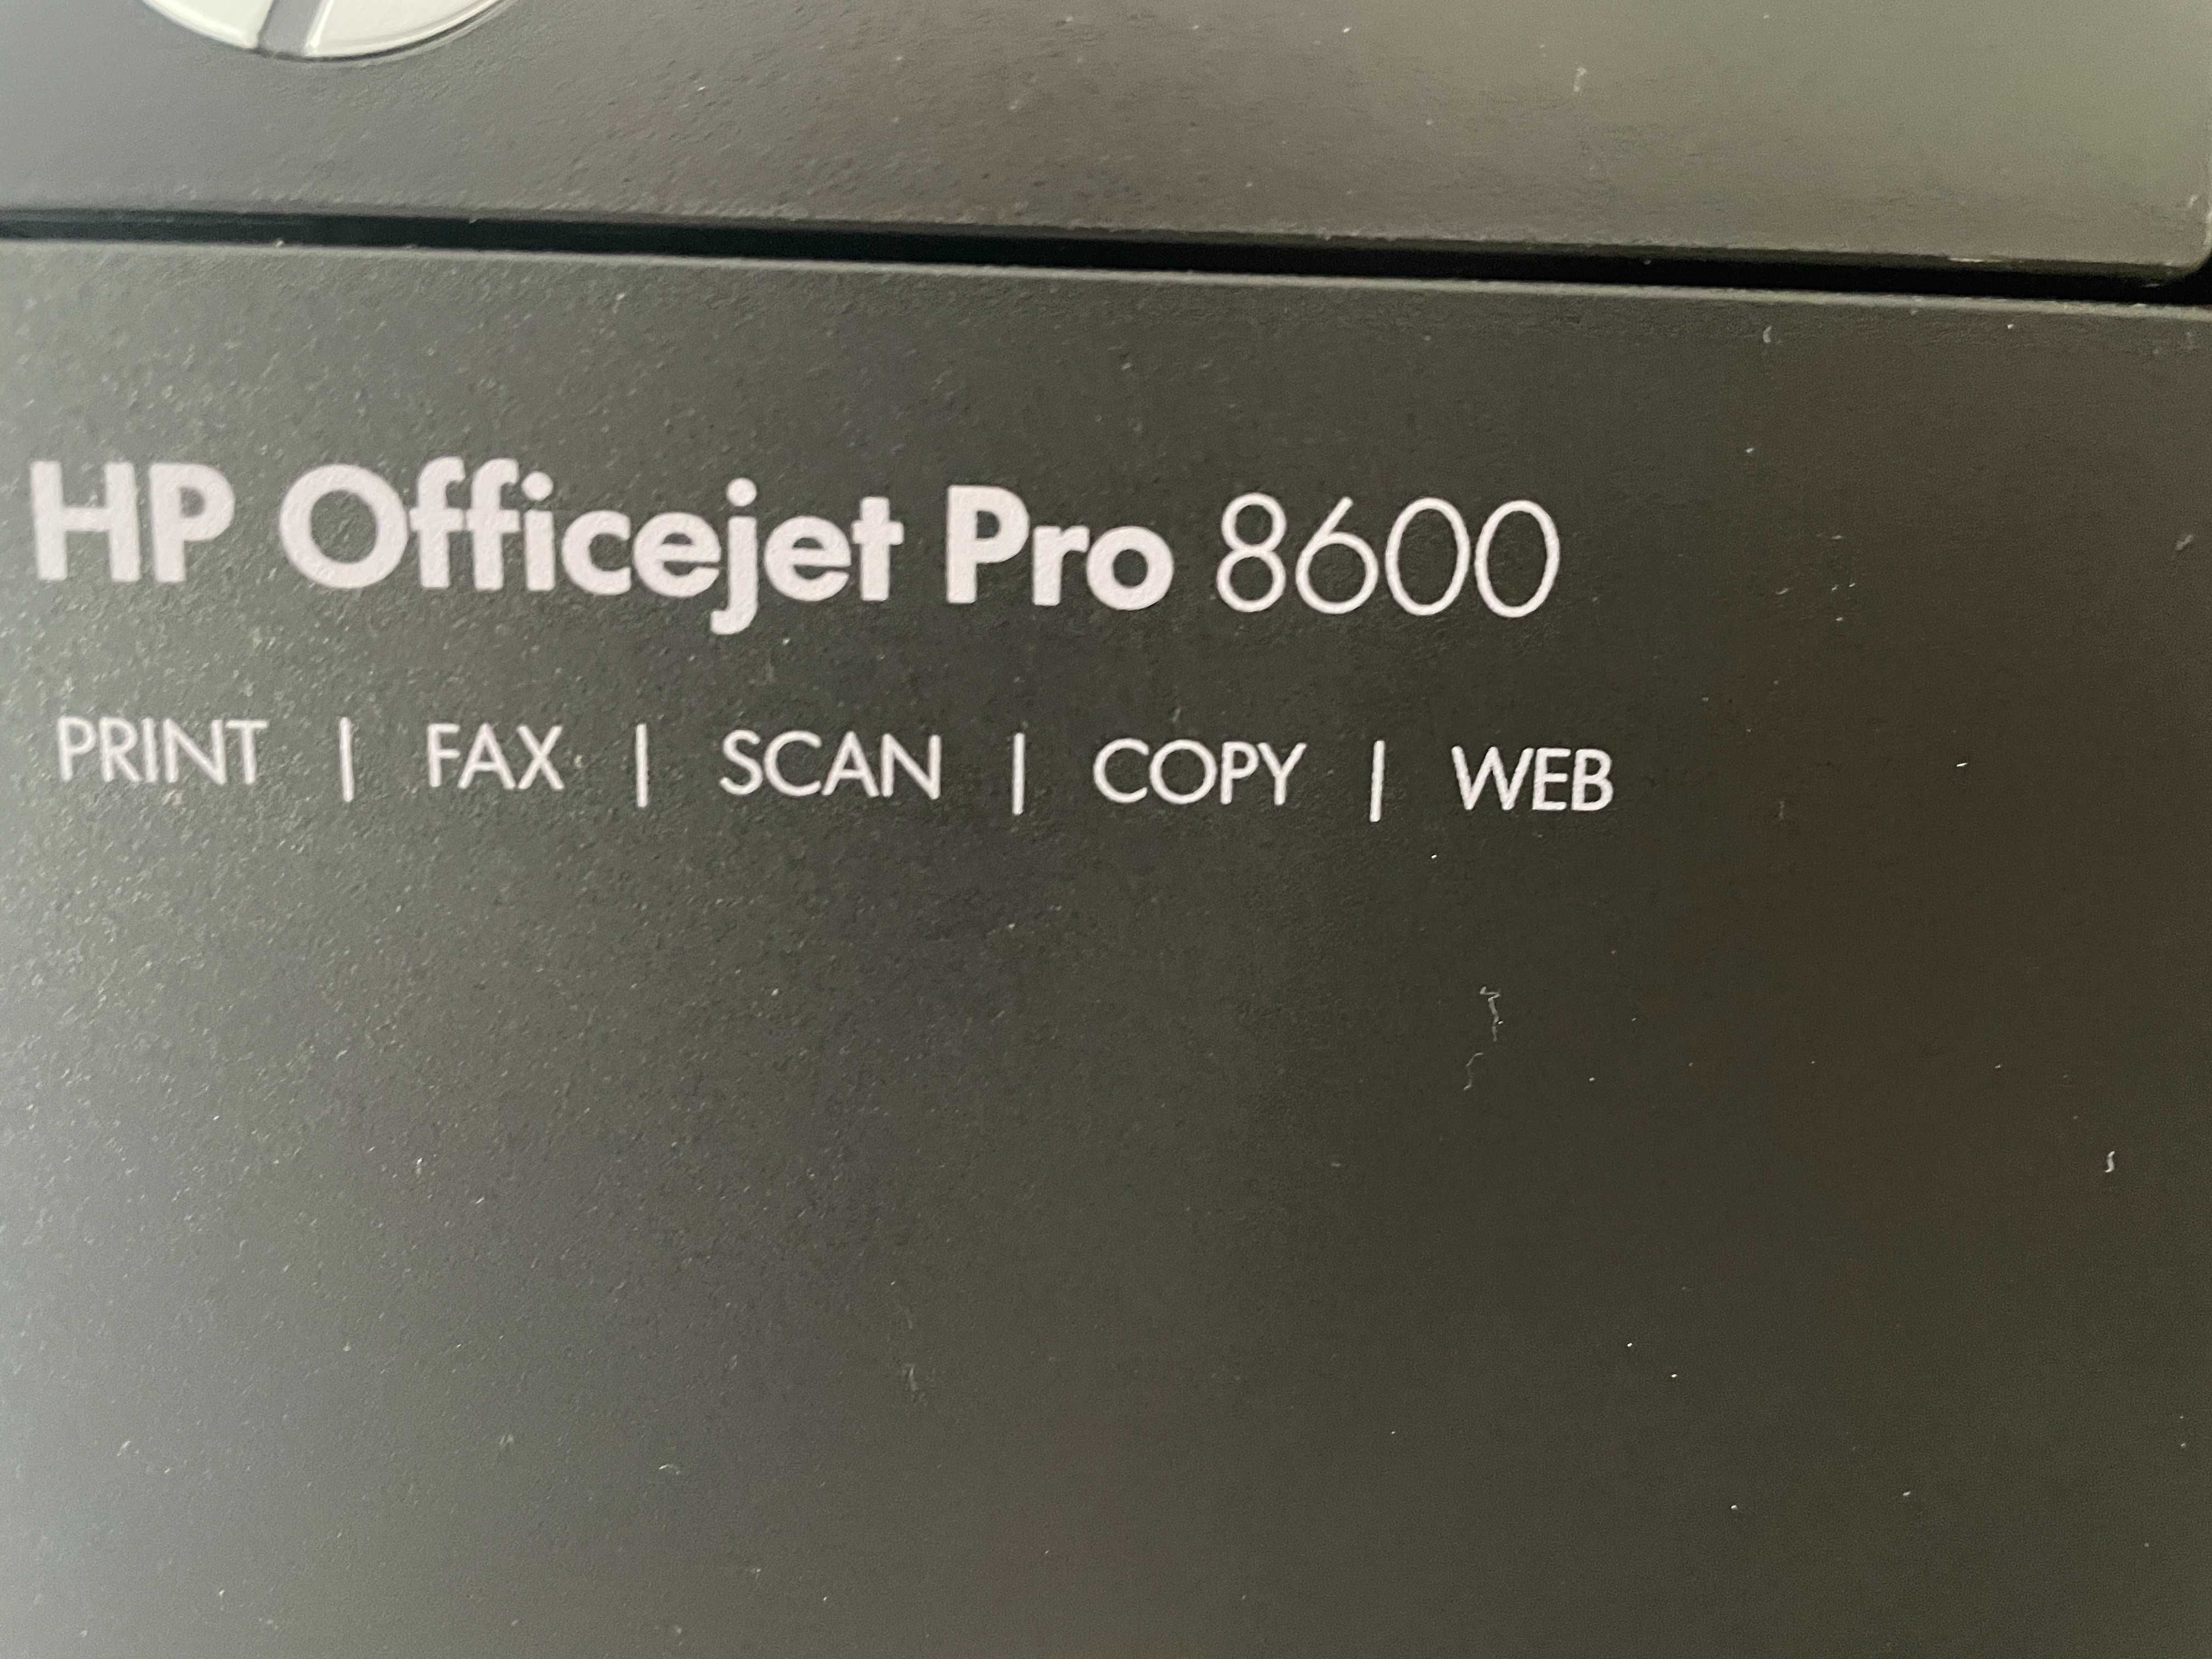 Impressora multi-funções HP OfficeJet Pro 8600